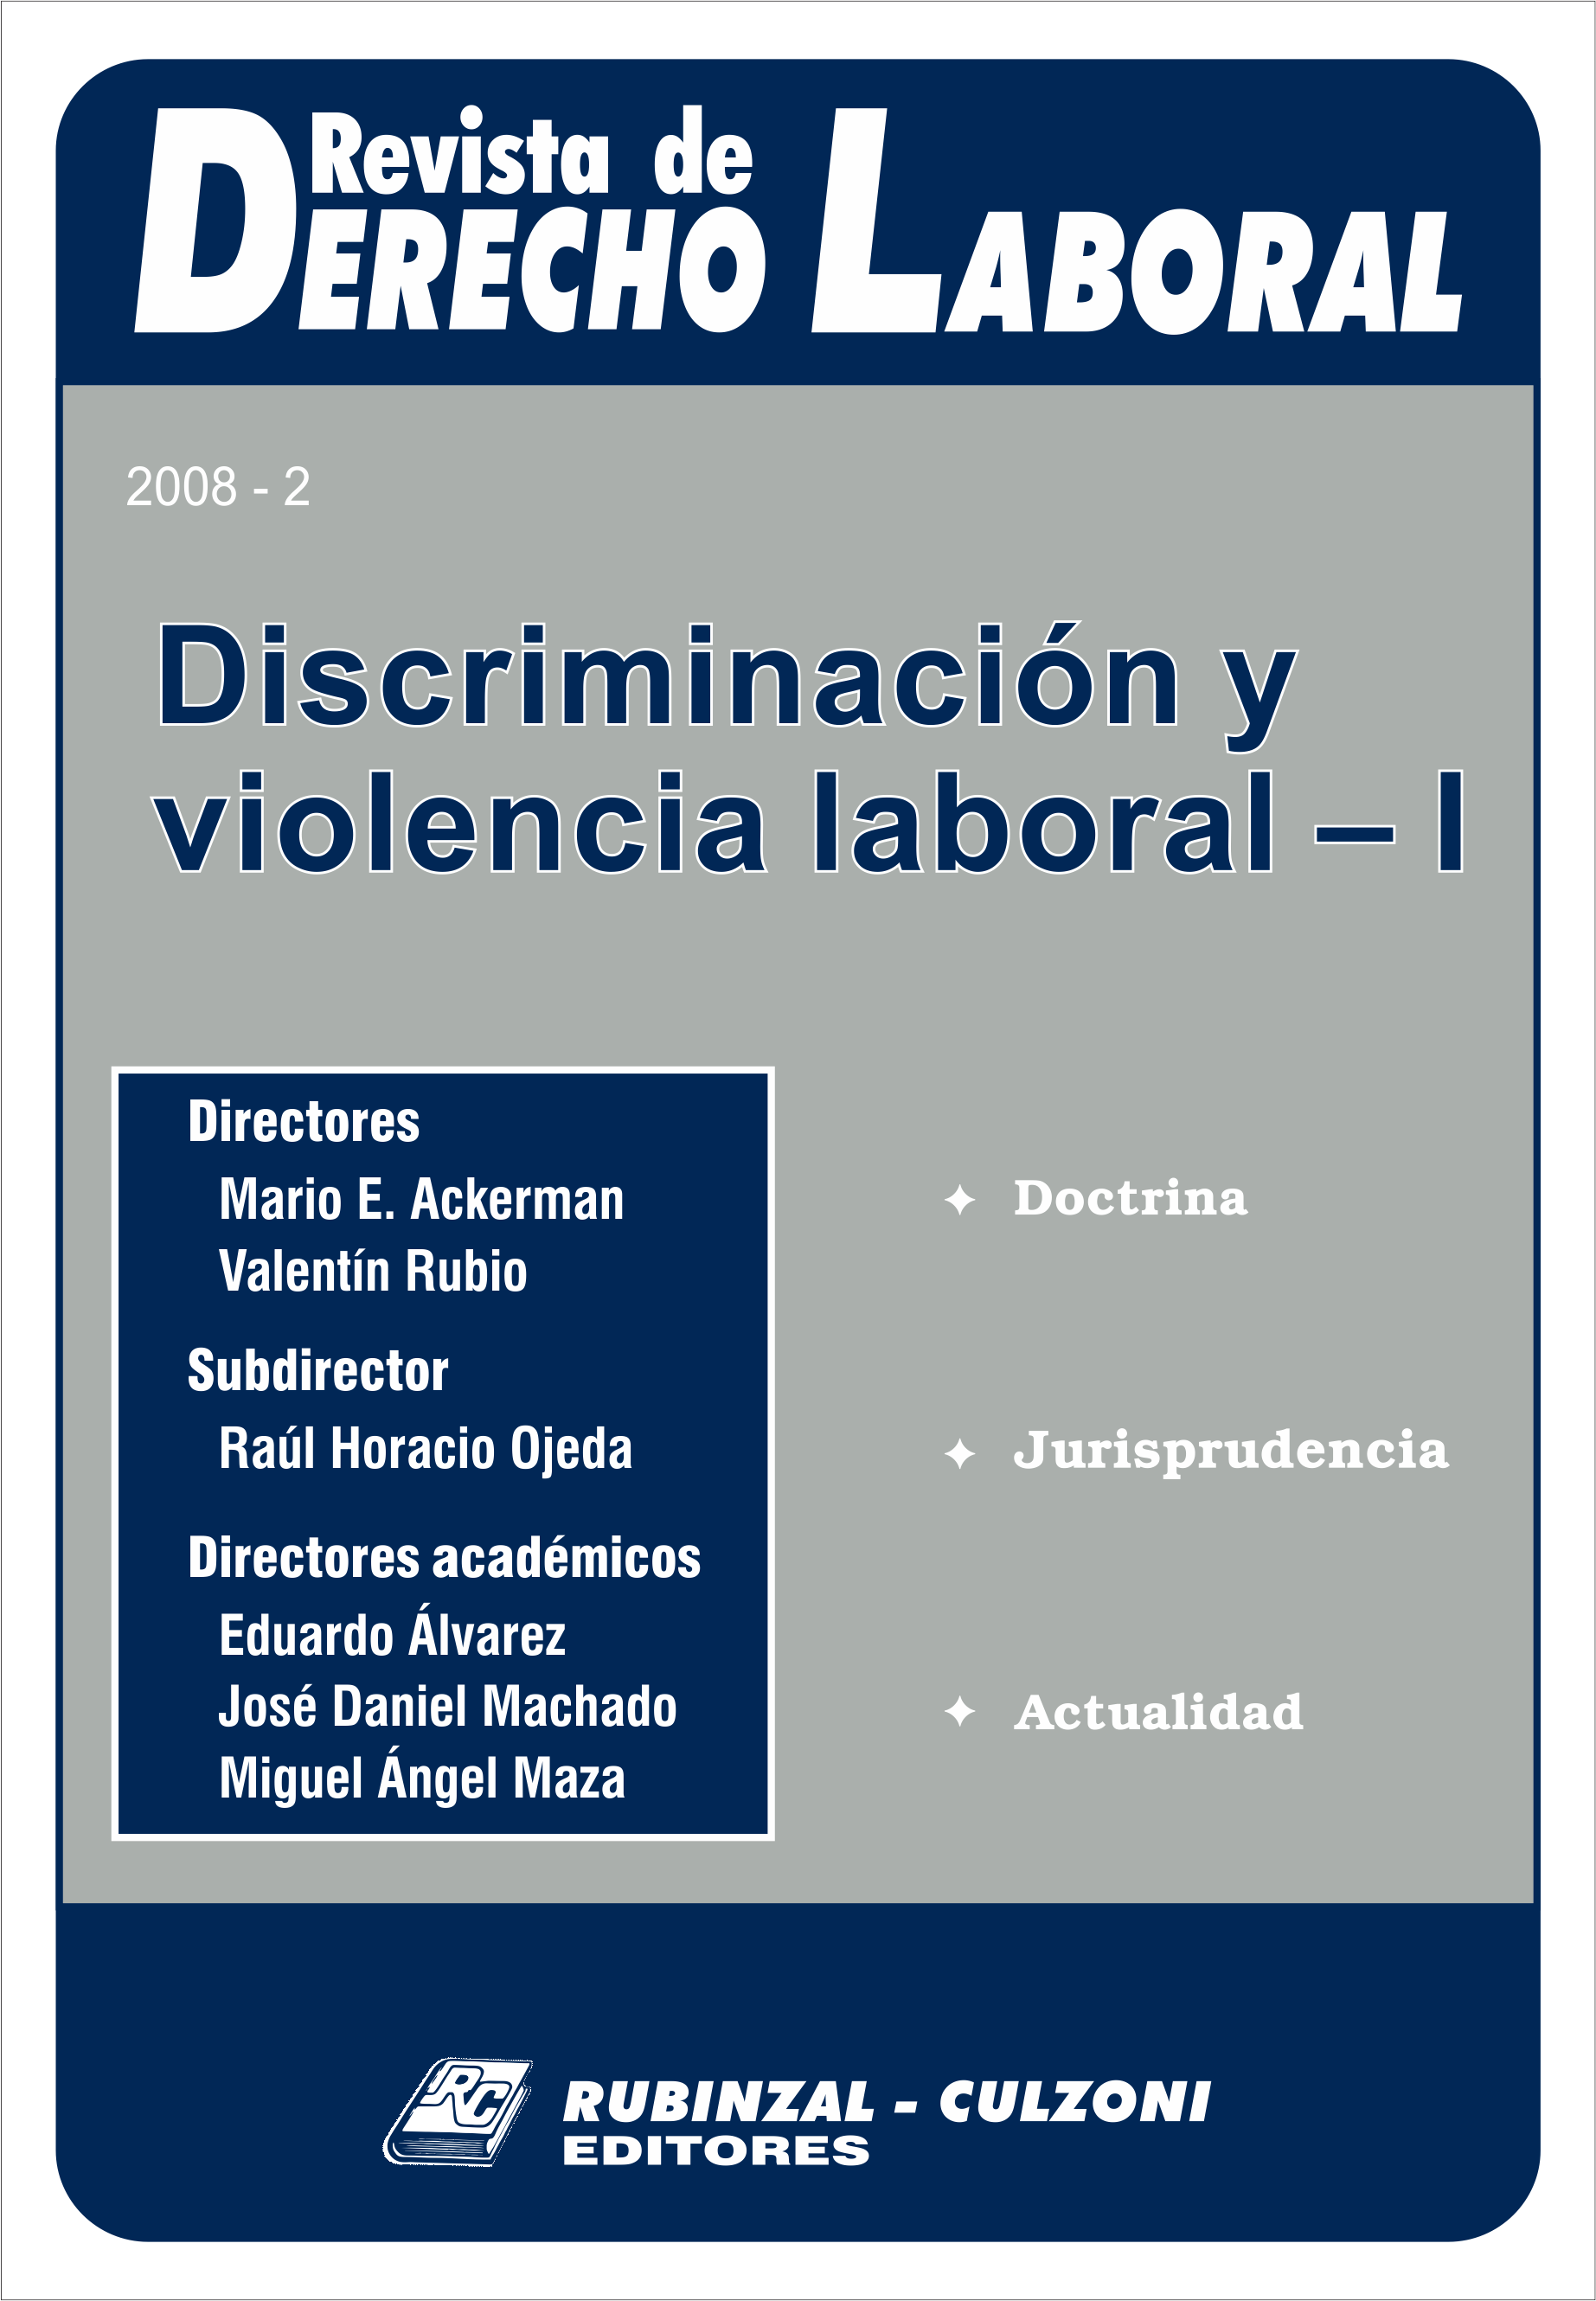 Revista de Derecho Laboral - Discriminación y violencia laboral - I.